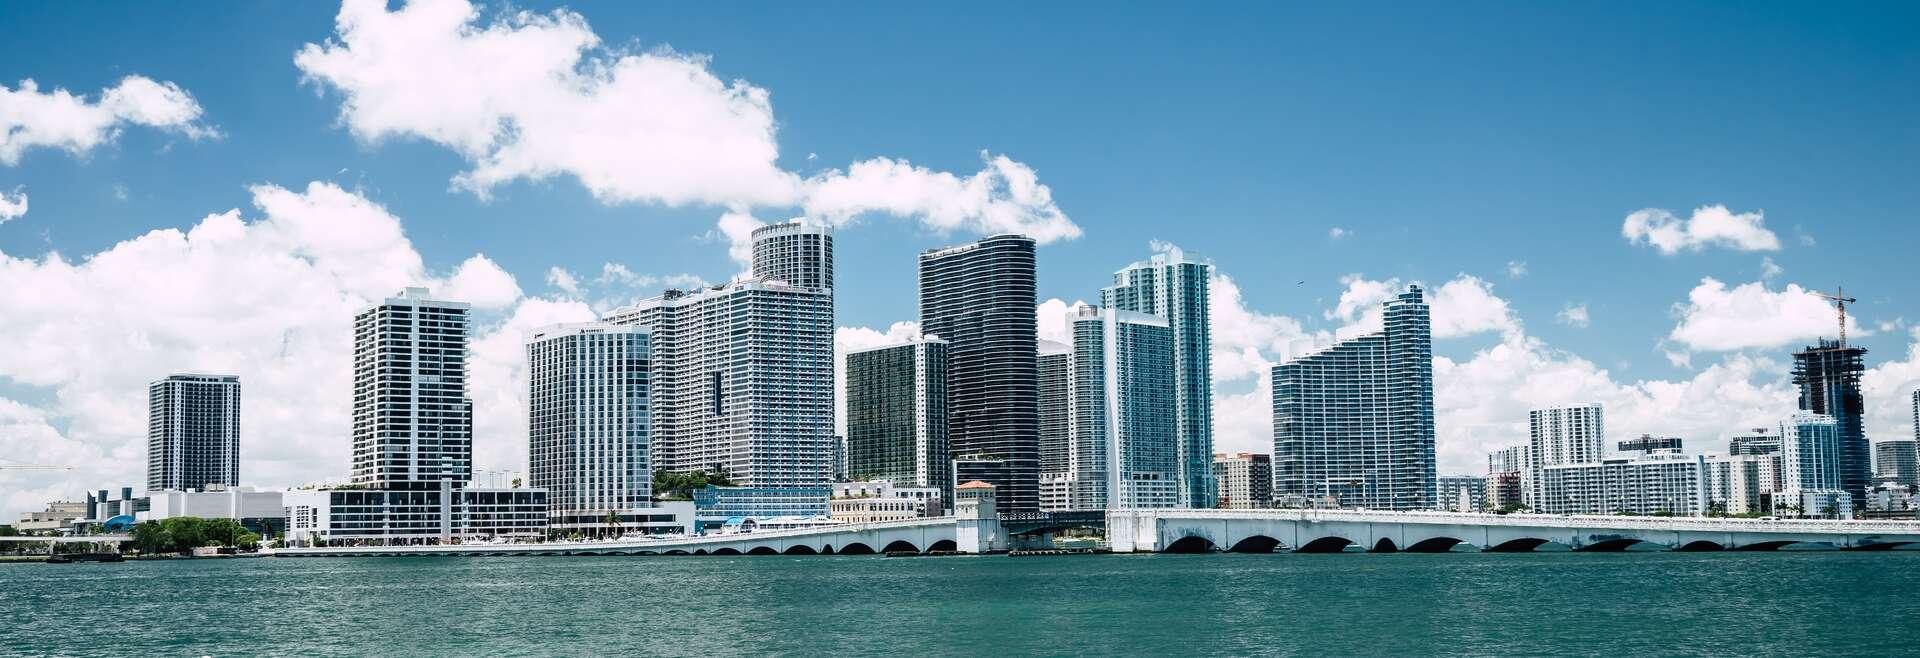 Séjour linguistique États-Unis, Miami - Skyline